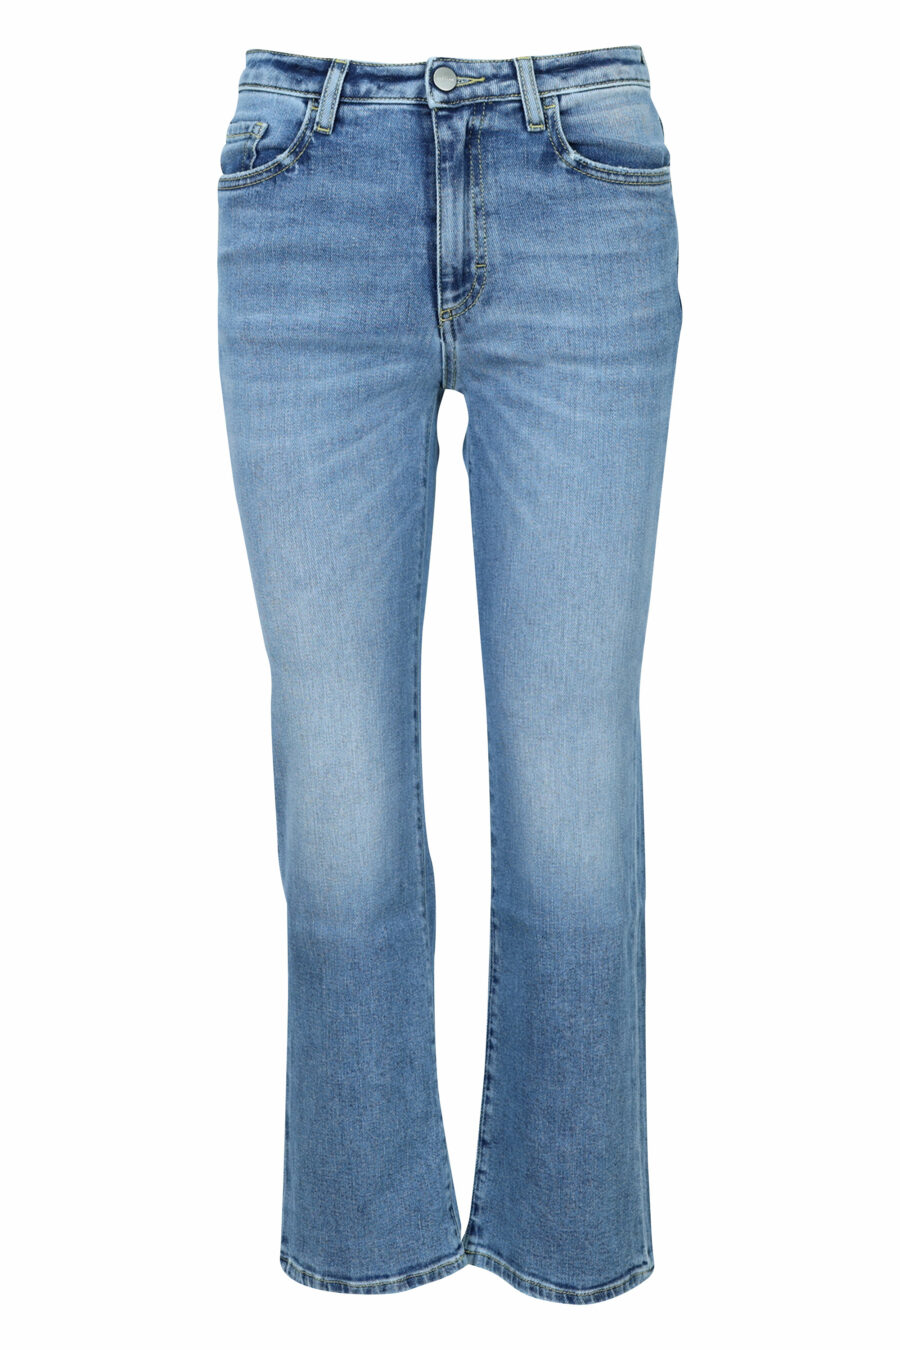 Blau gewaschene "Pam" Jeans mit weitem Stiefel - 8059772788069